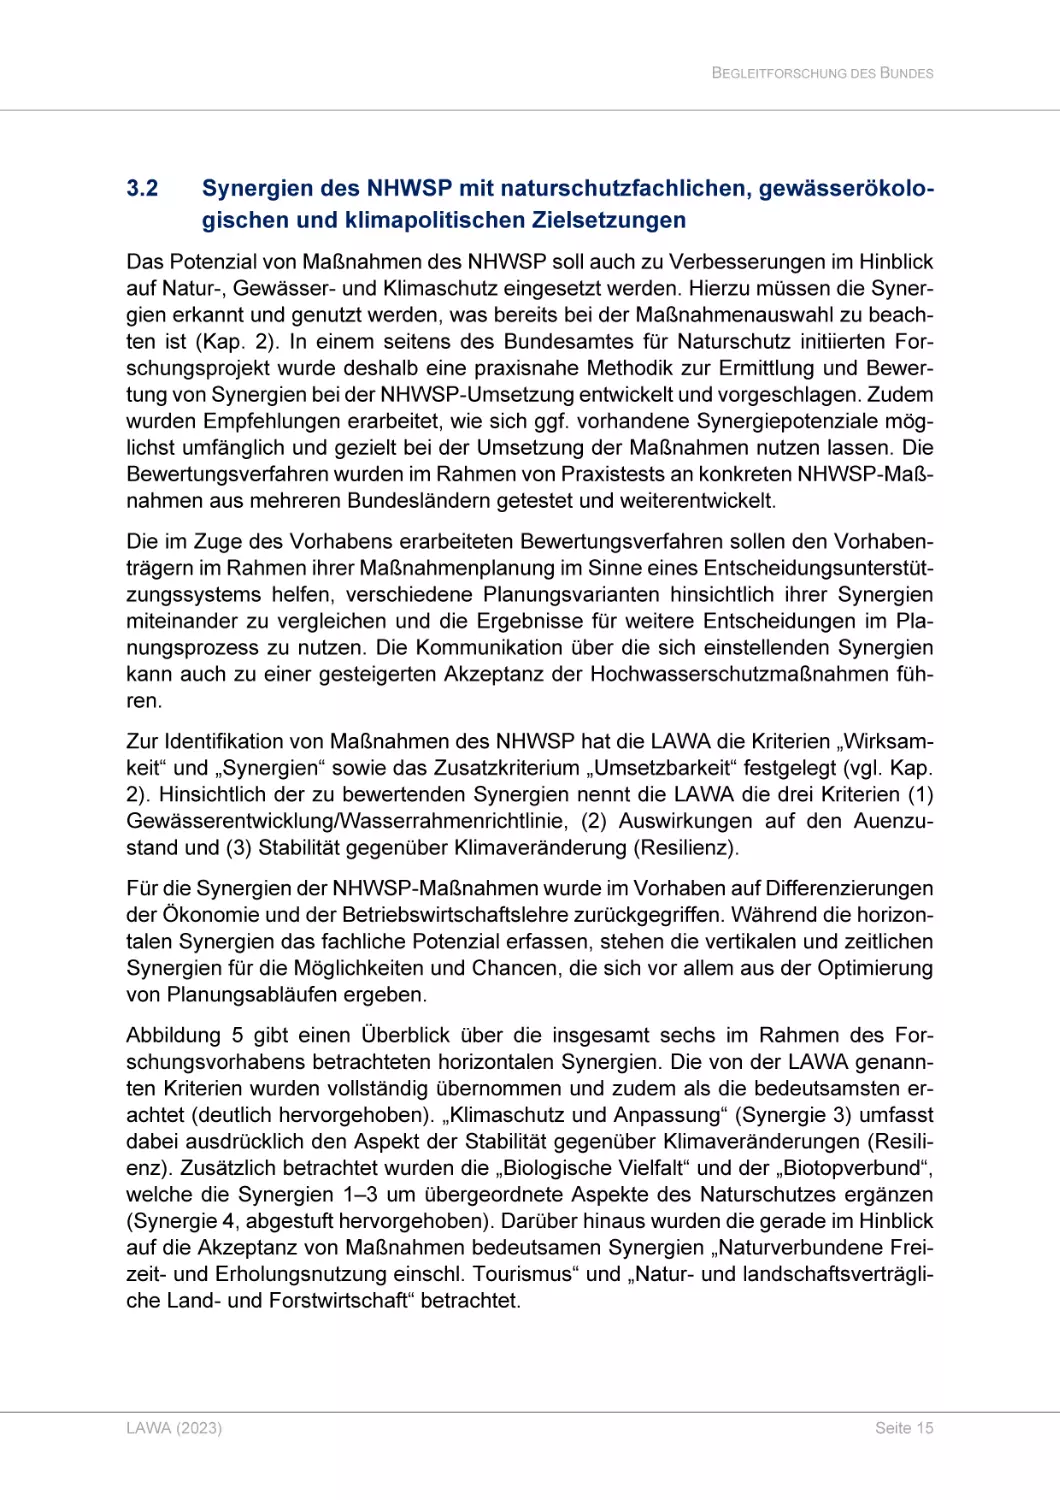 3.2 Synergien des NHWSP mit naturschutzfachlichen, gewässerökologischen und klimapolitischen Zielsetzungen